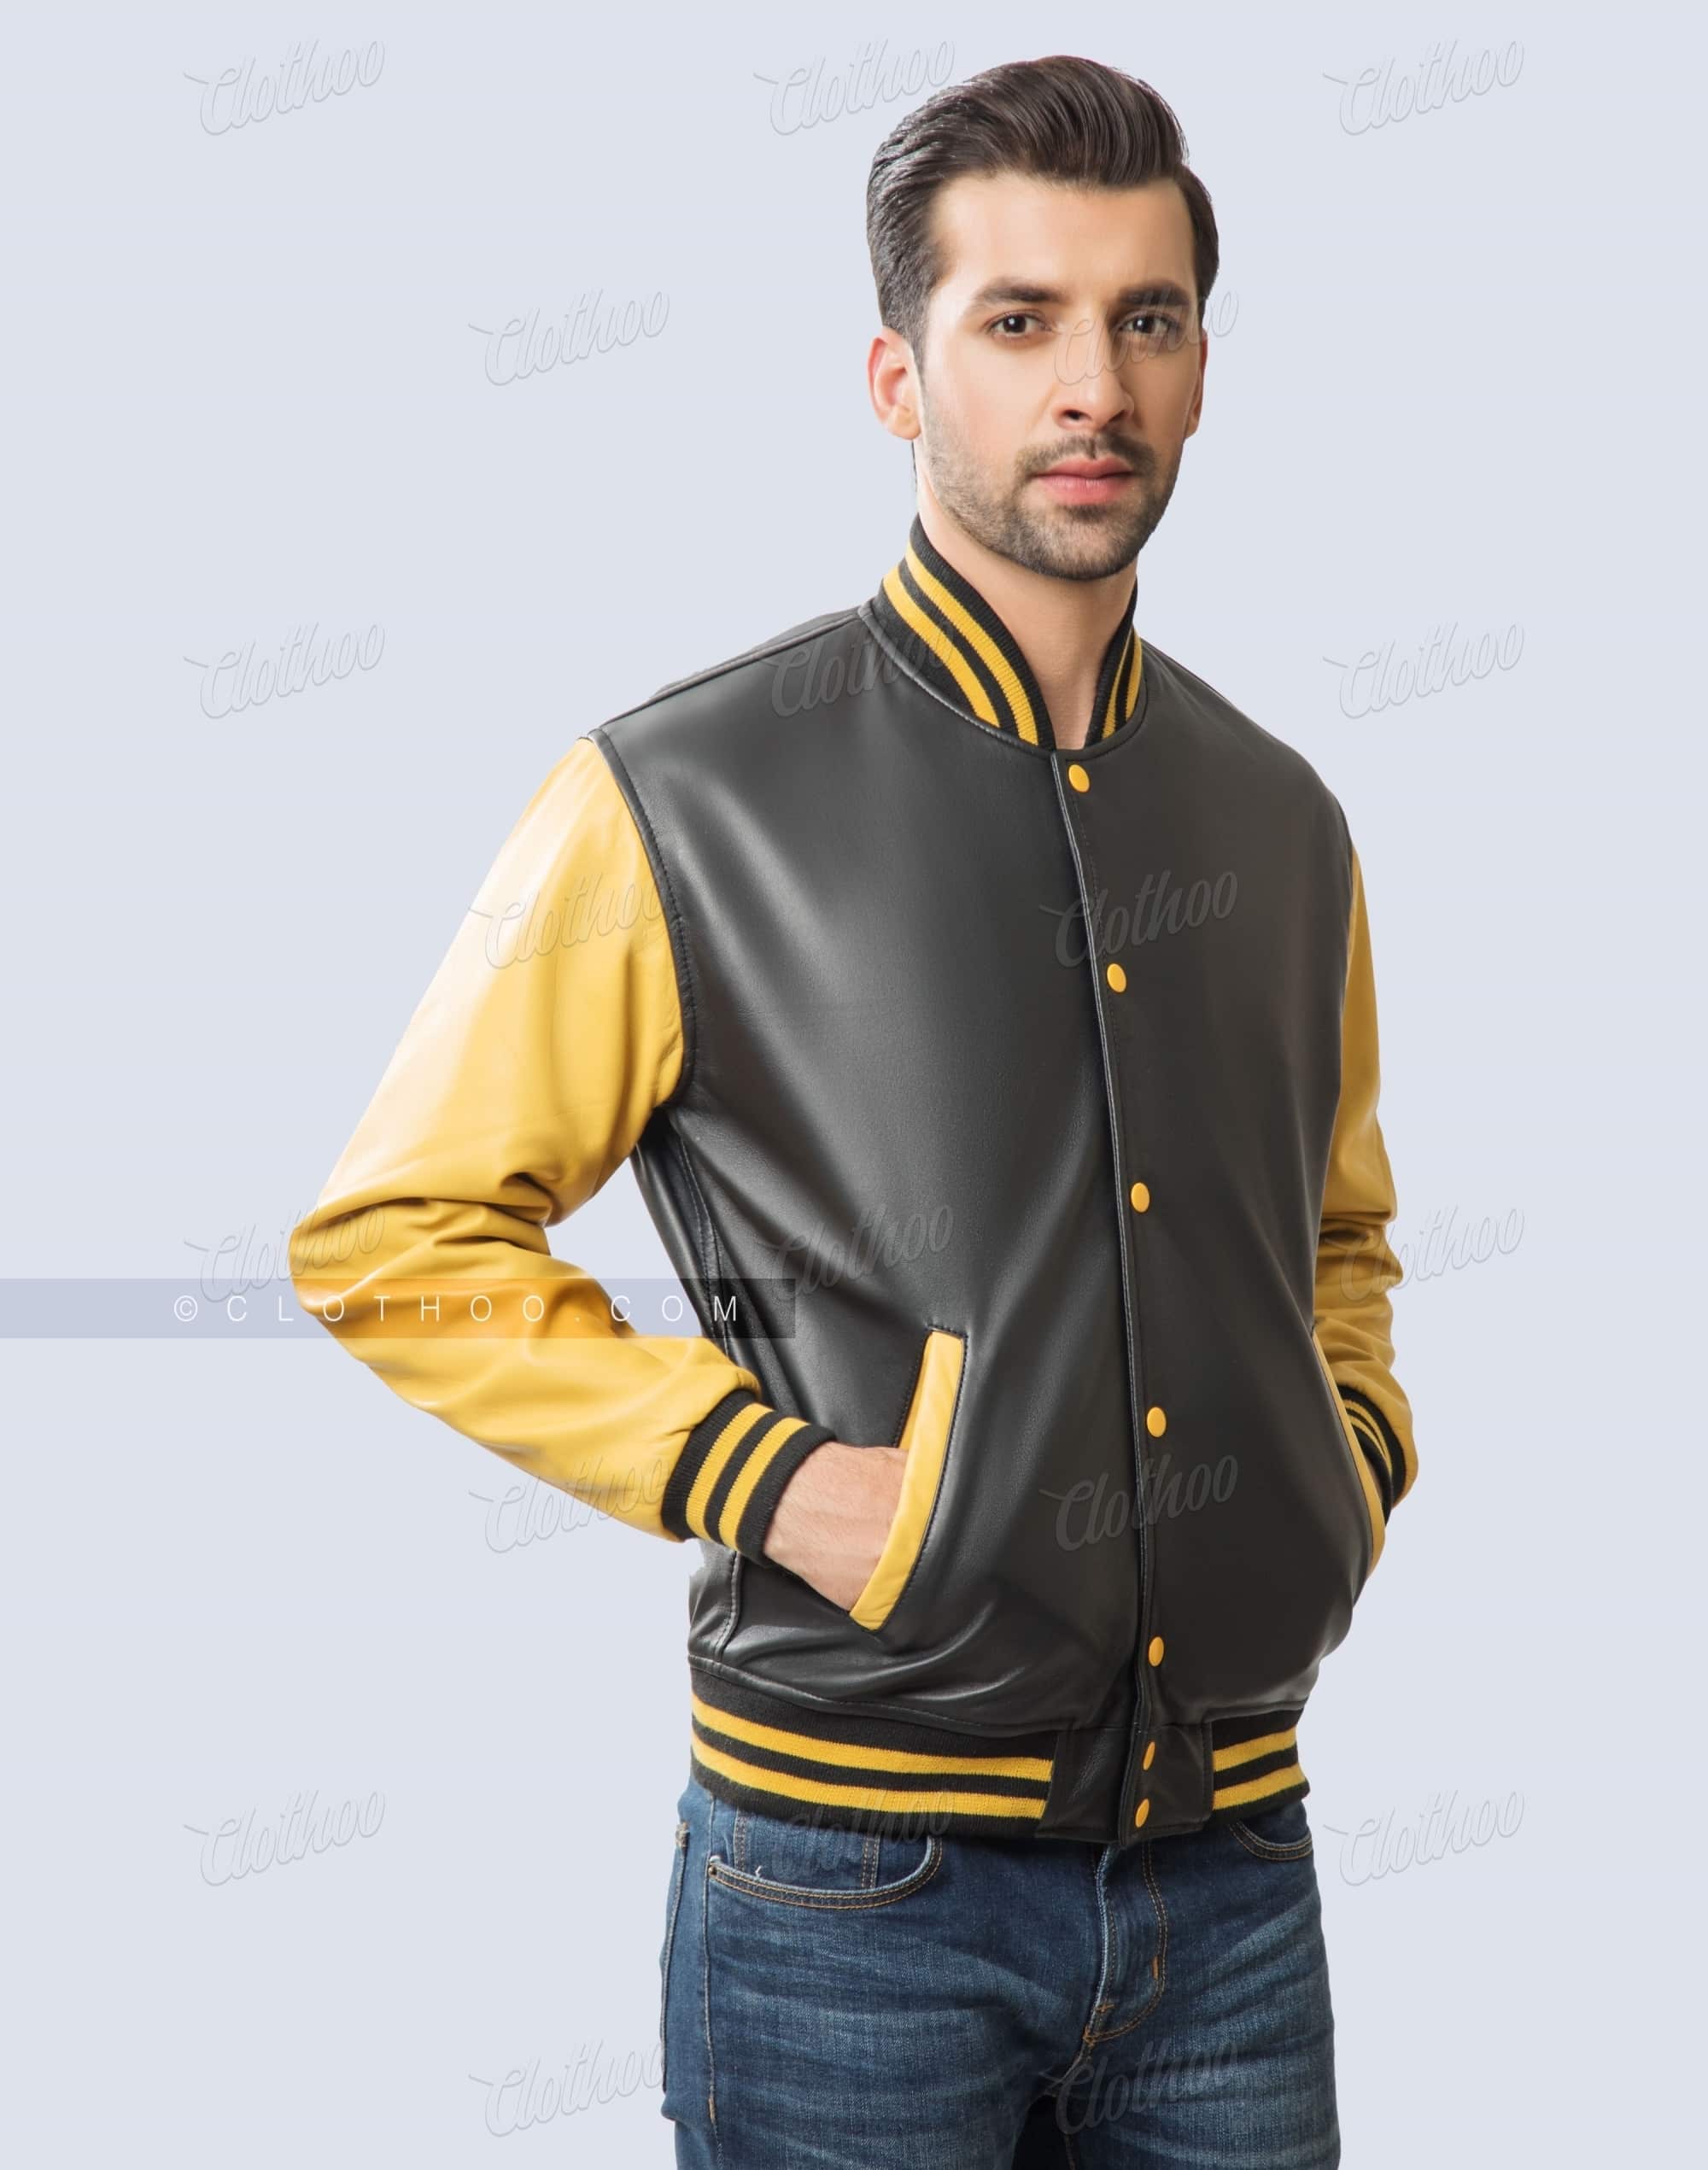 Personalized Varsity Jackets | Gold & Black Leather | Clothoo